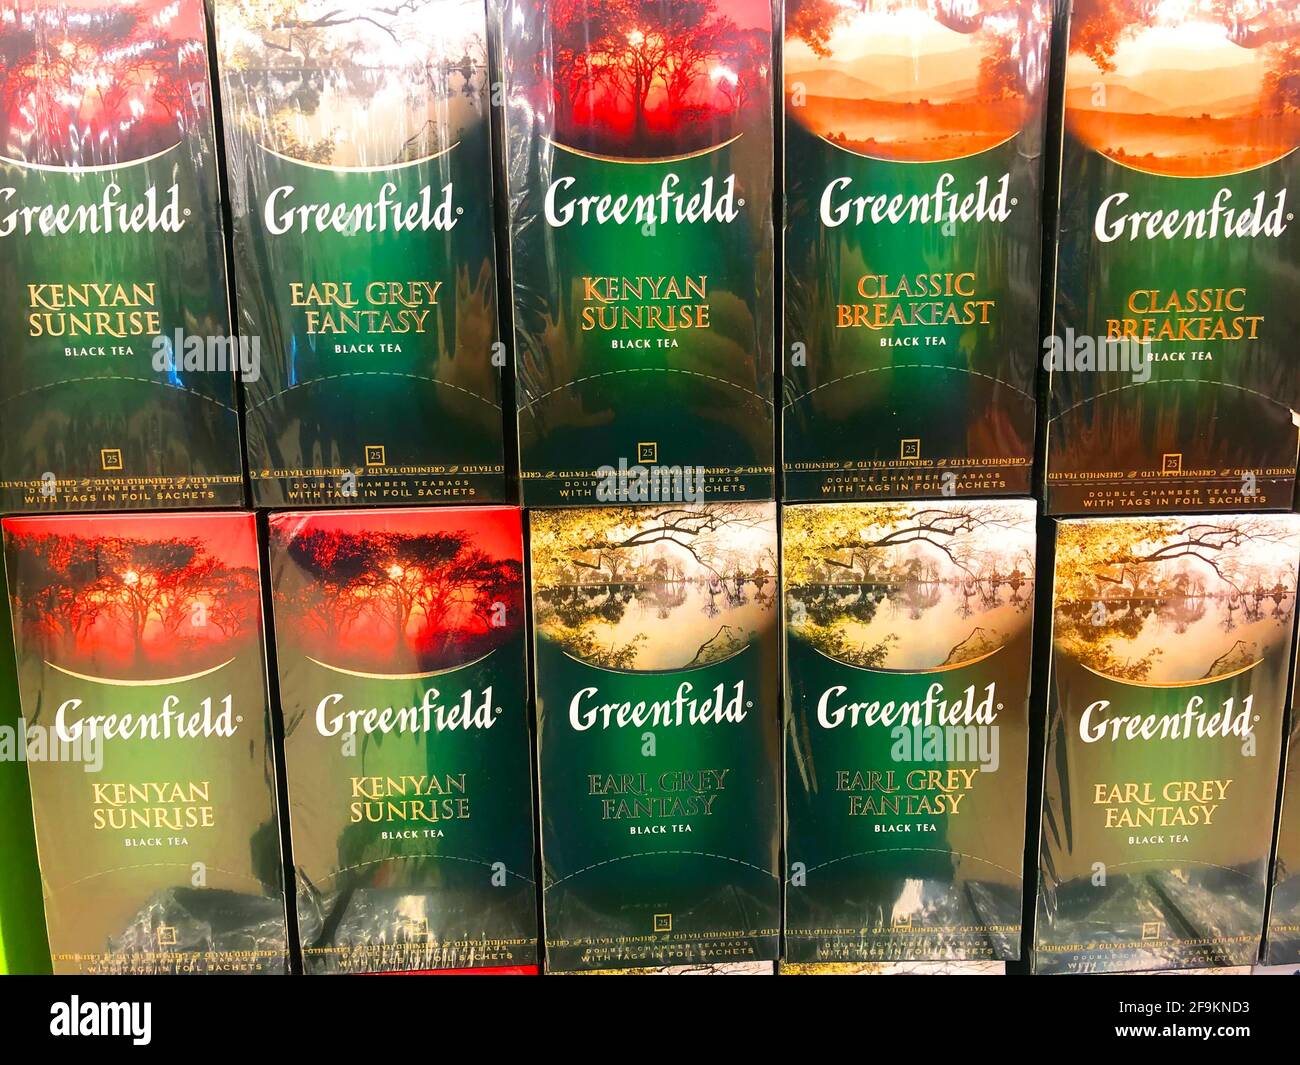 Greenfield Golden ceylon thé noir assorti dans des sacs de boîte, dans une étagère de supermarché gros plan, Russie, Saint-Pétersbourg. 10 avril 2021 Banque D'Images